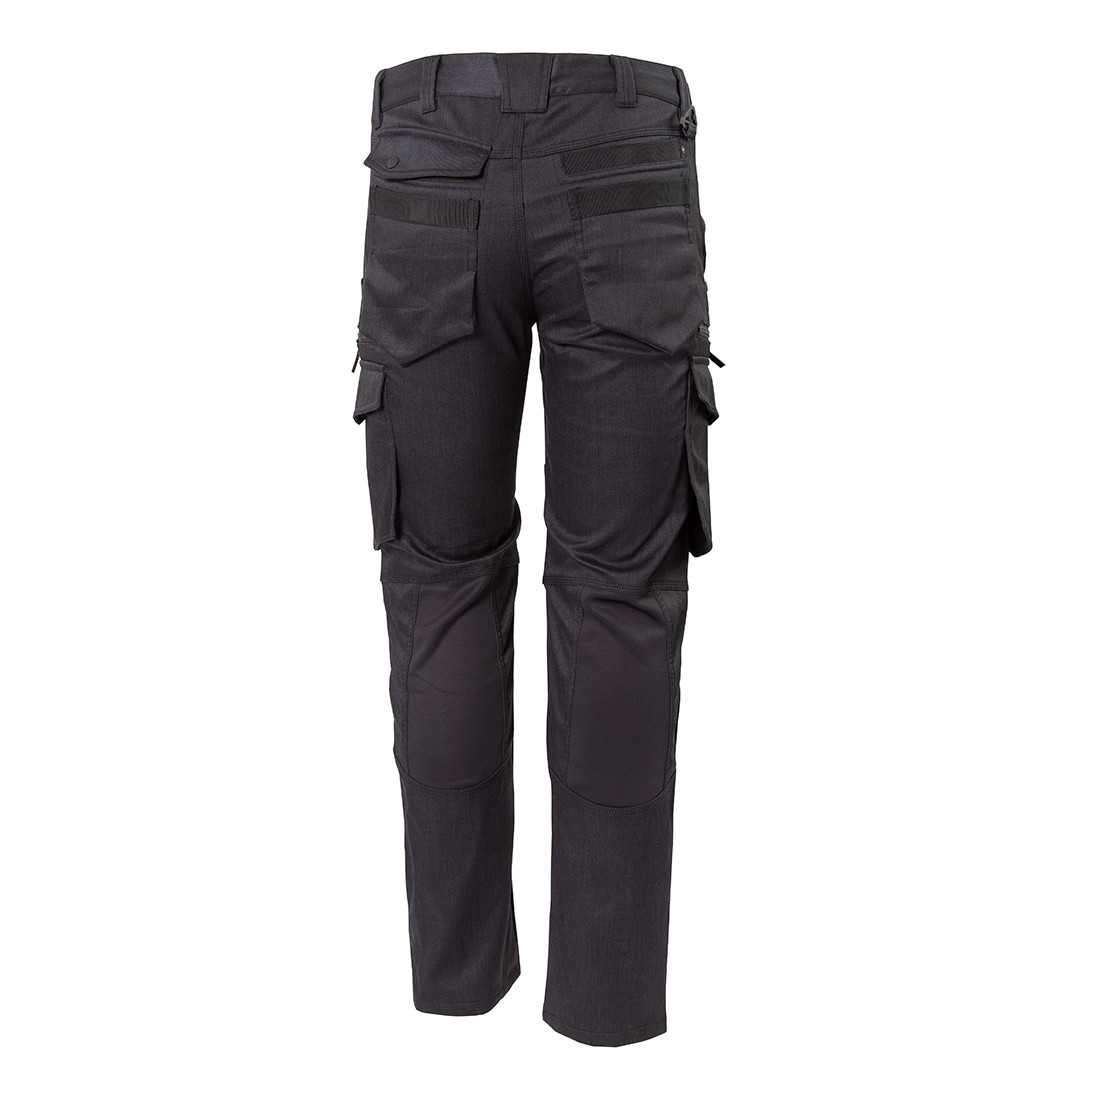 Pantalon de travail hiver - Les vêtements de protection